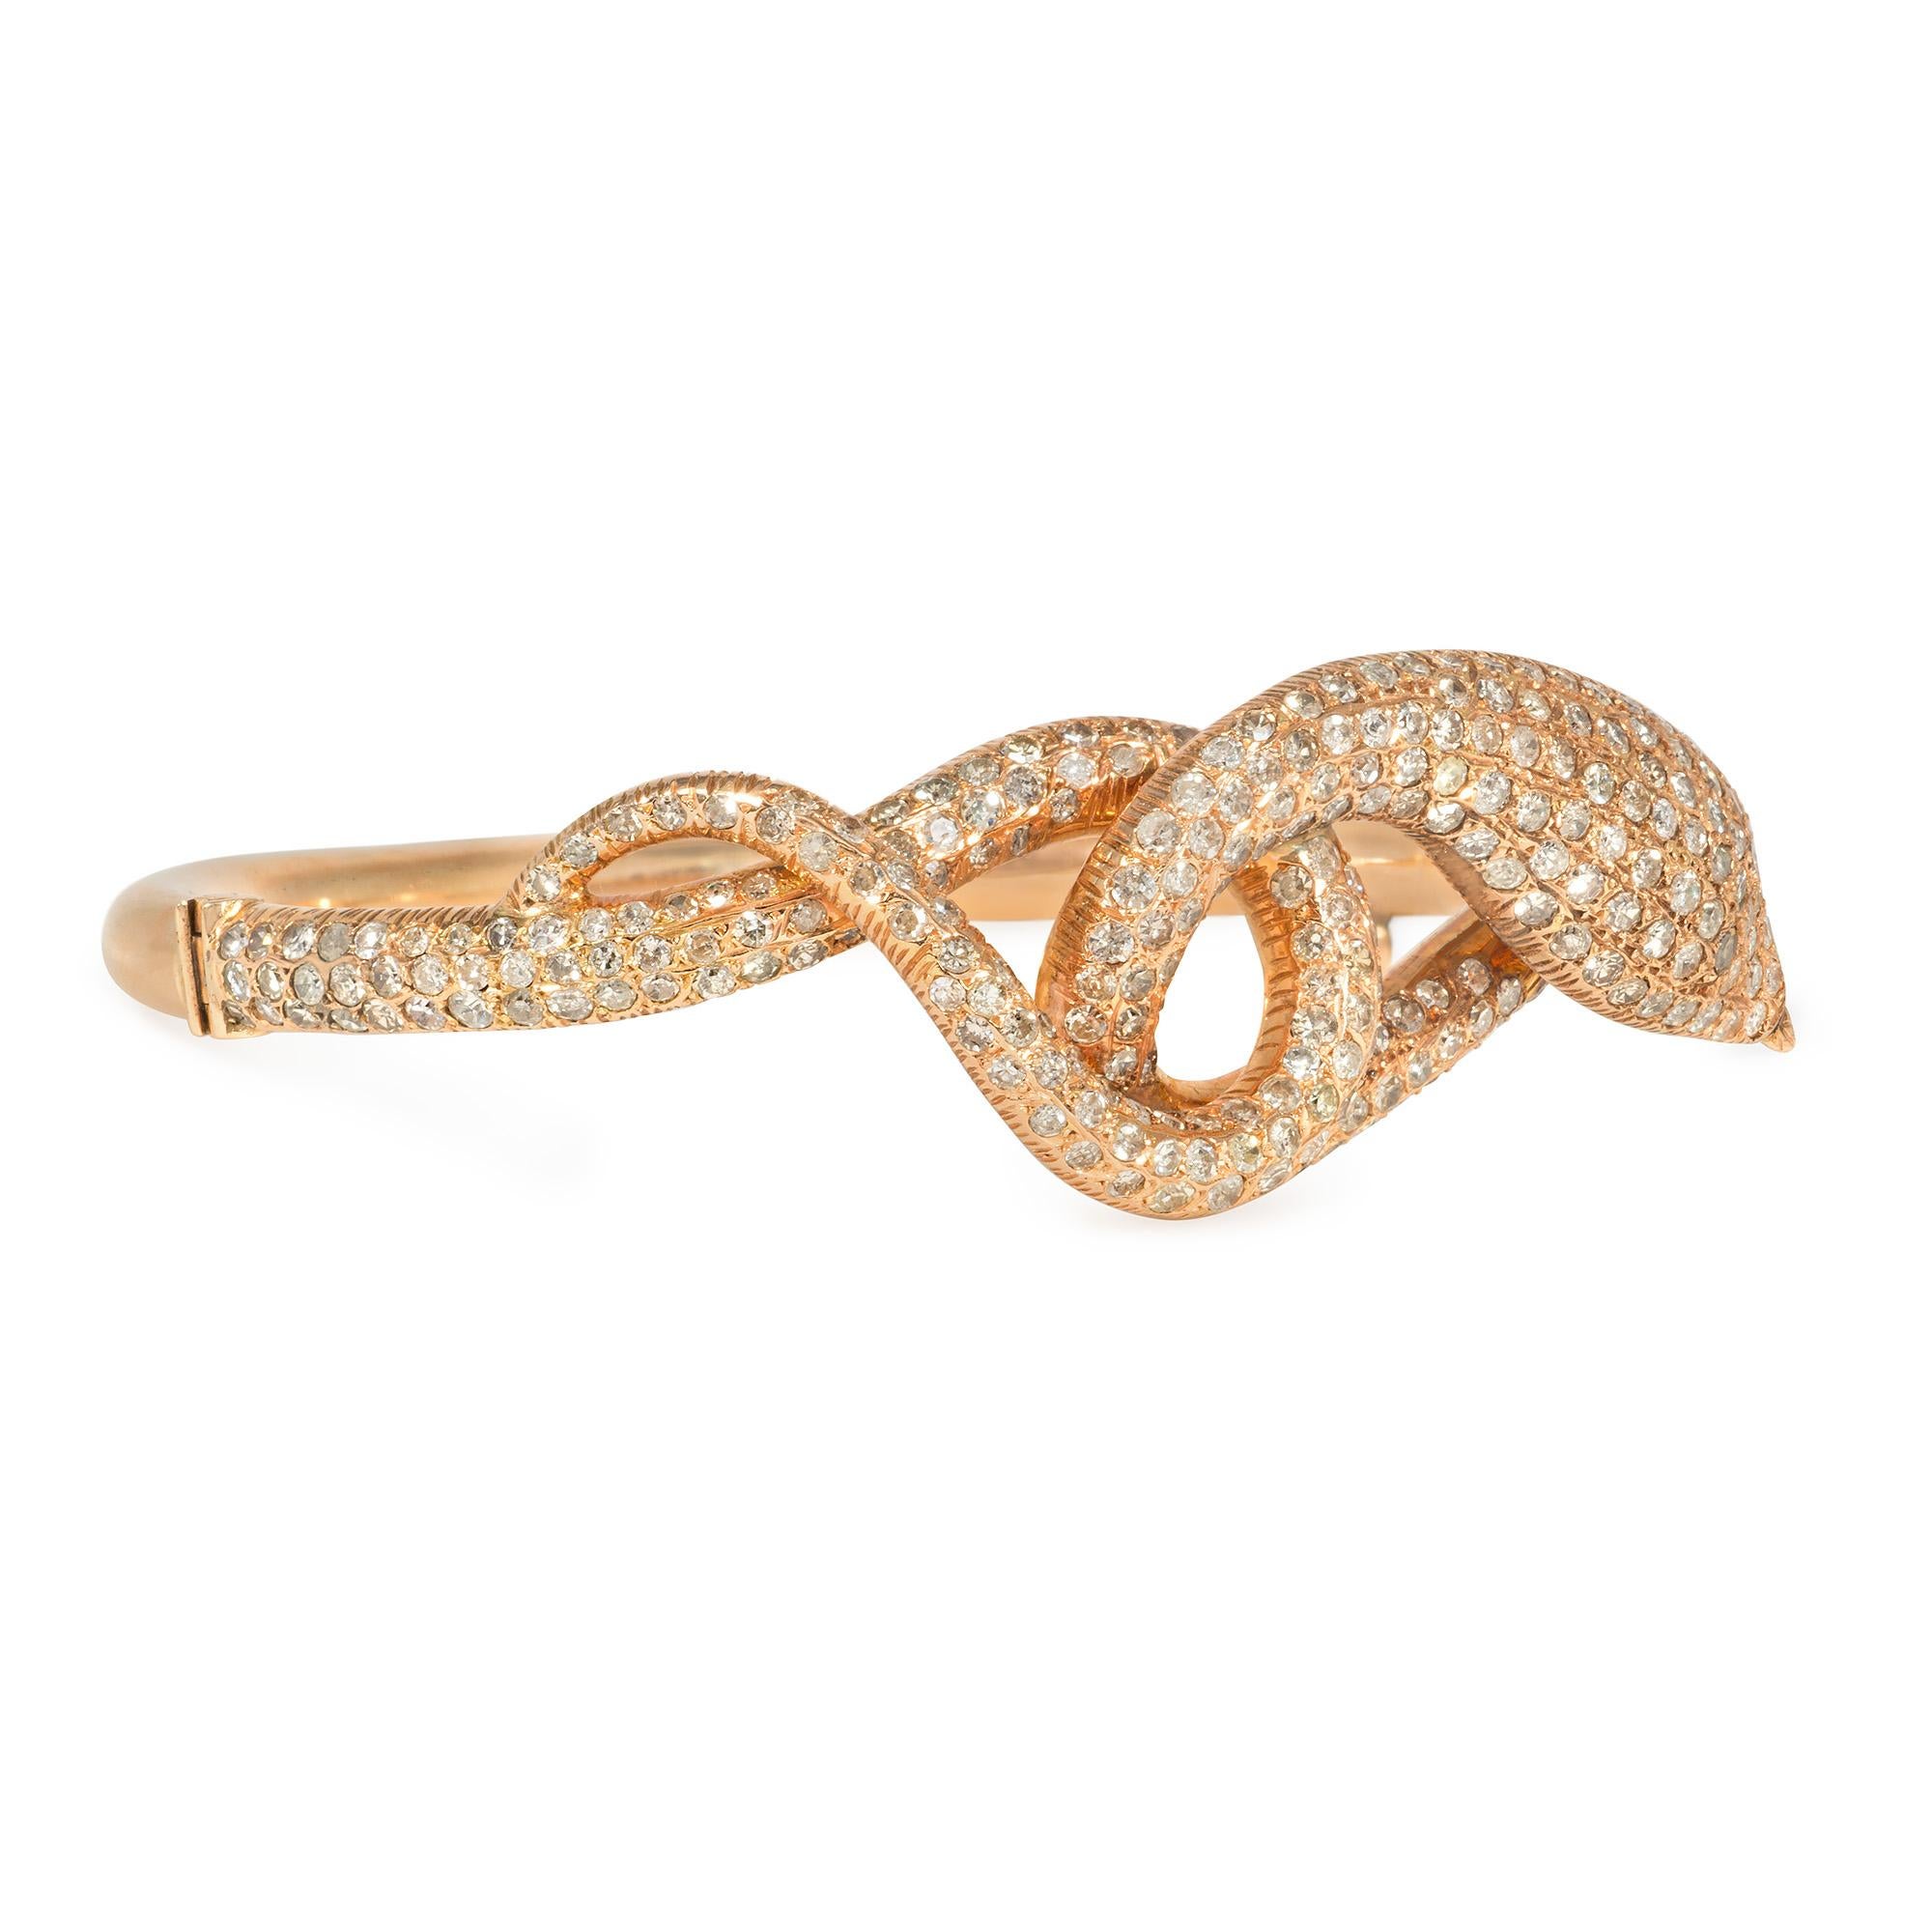 Bracelet à charnière en or rose et diamants pavés du milieu du siècle dernier, en forme de serpent enroulé, serti de diamants taille unique sur le devant, en 14k.  Diamants Atw 4,00 cts.  Dimensions : 6,5